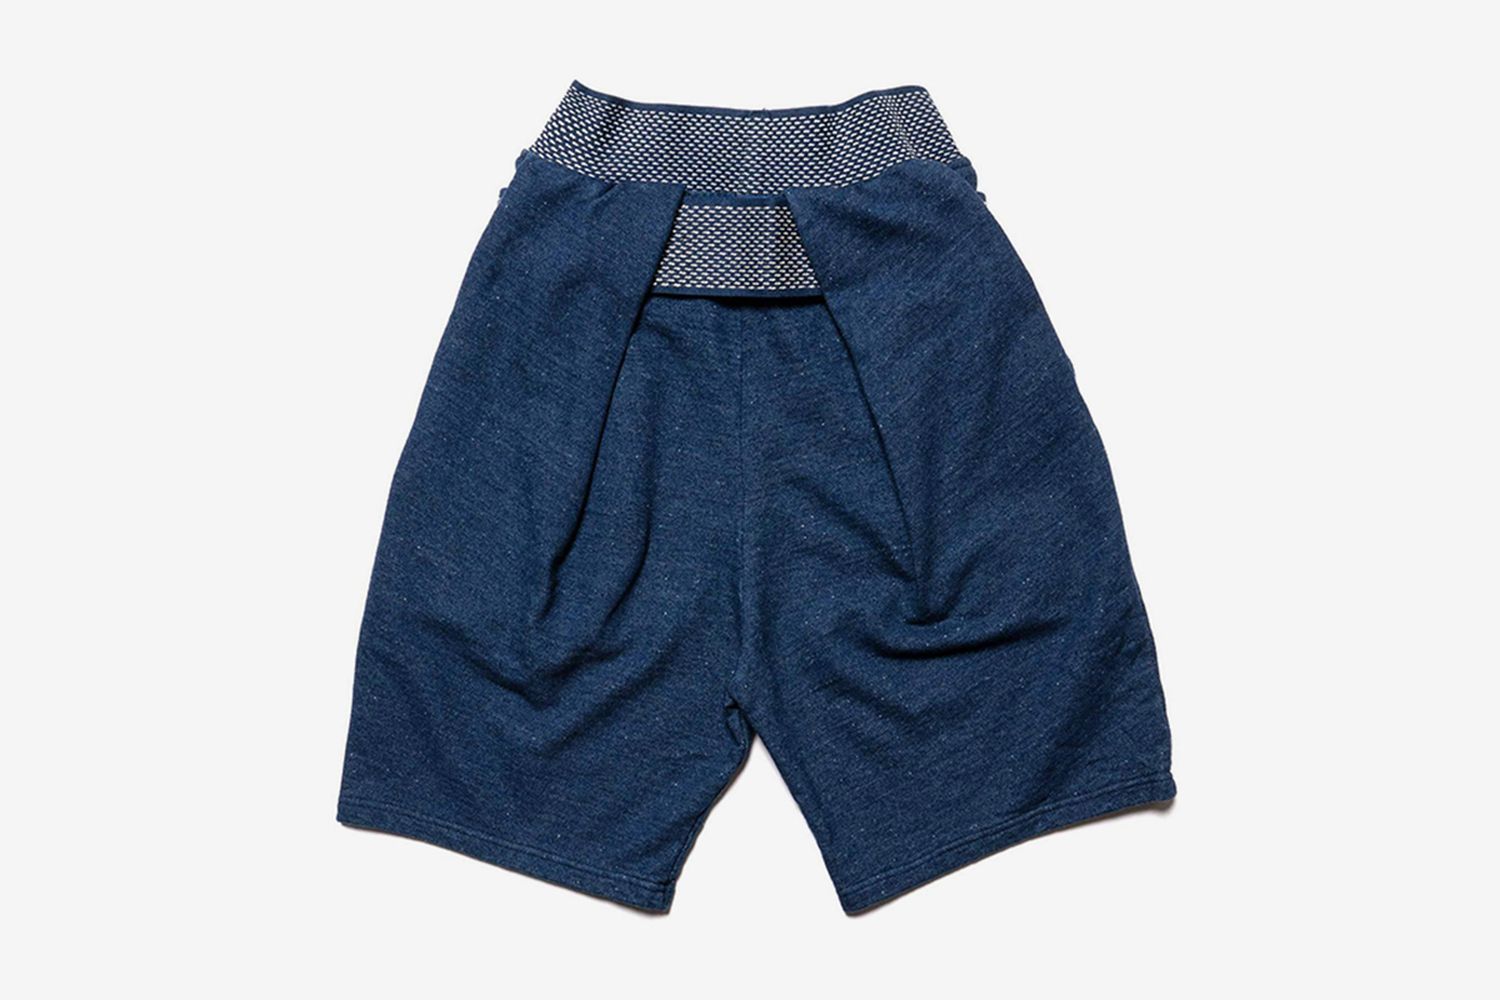 IDG Fleece Knit Shimokita Shorts